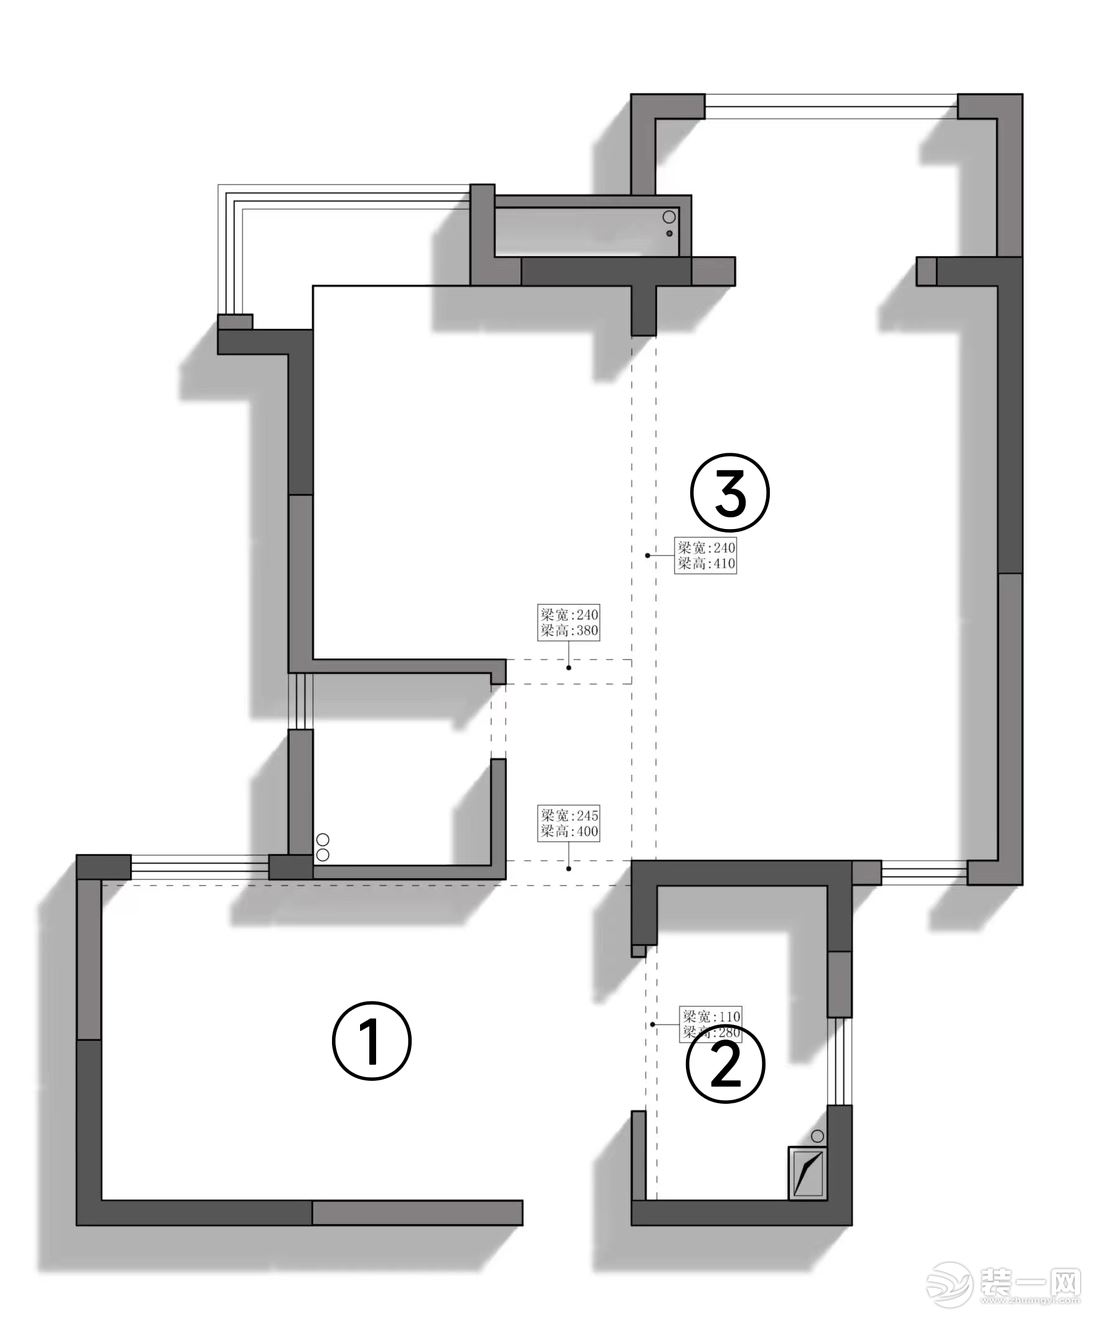 改造前： ①入户餐厅和次卧室在一起较拥挤，且没有玄关。 ②原始厨房只有1.68*3.1的空间，比较小